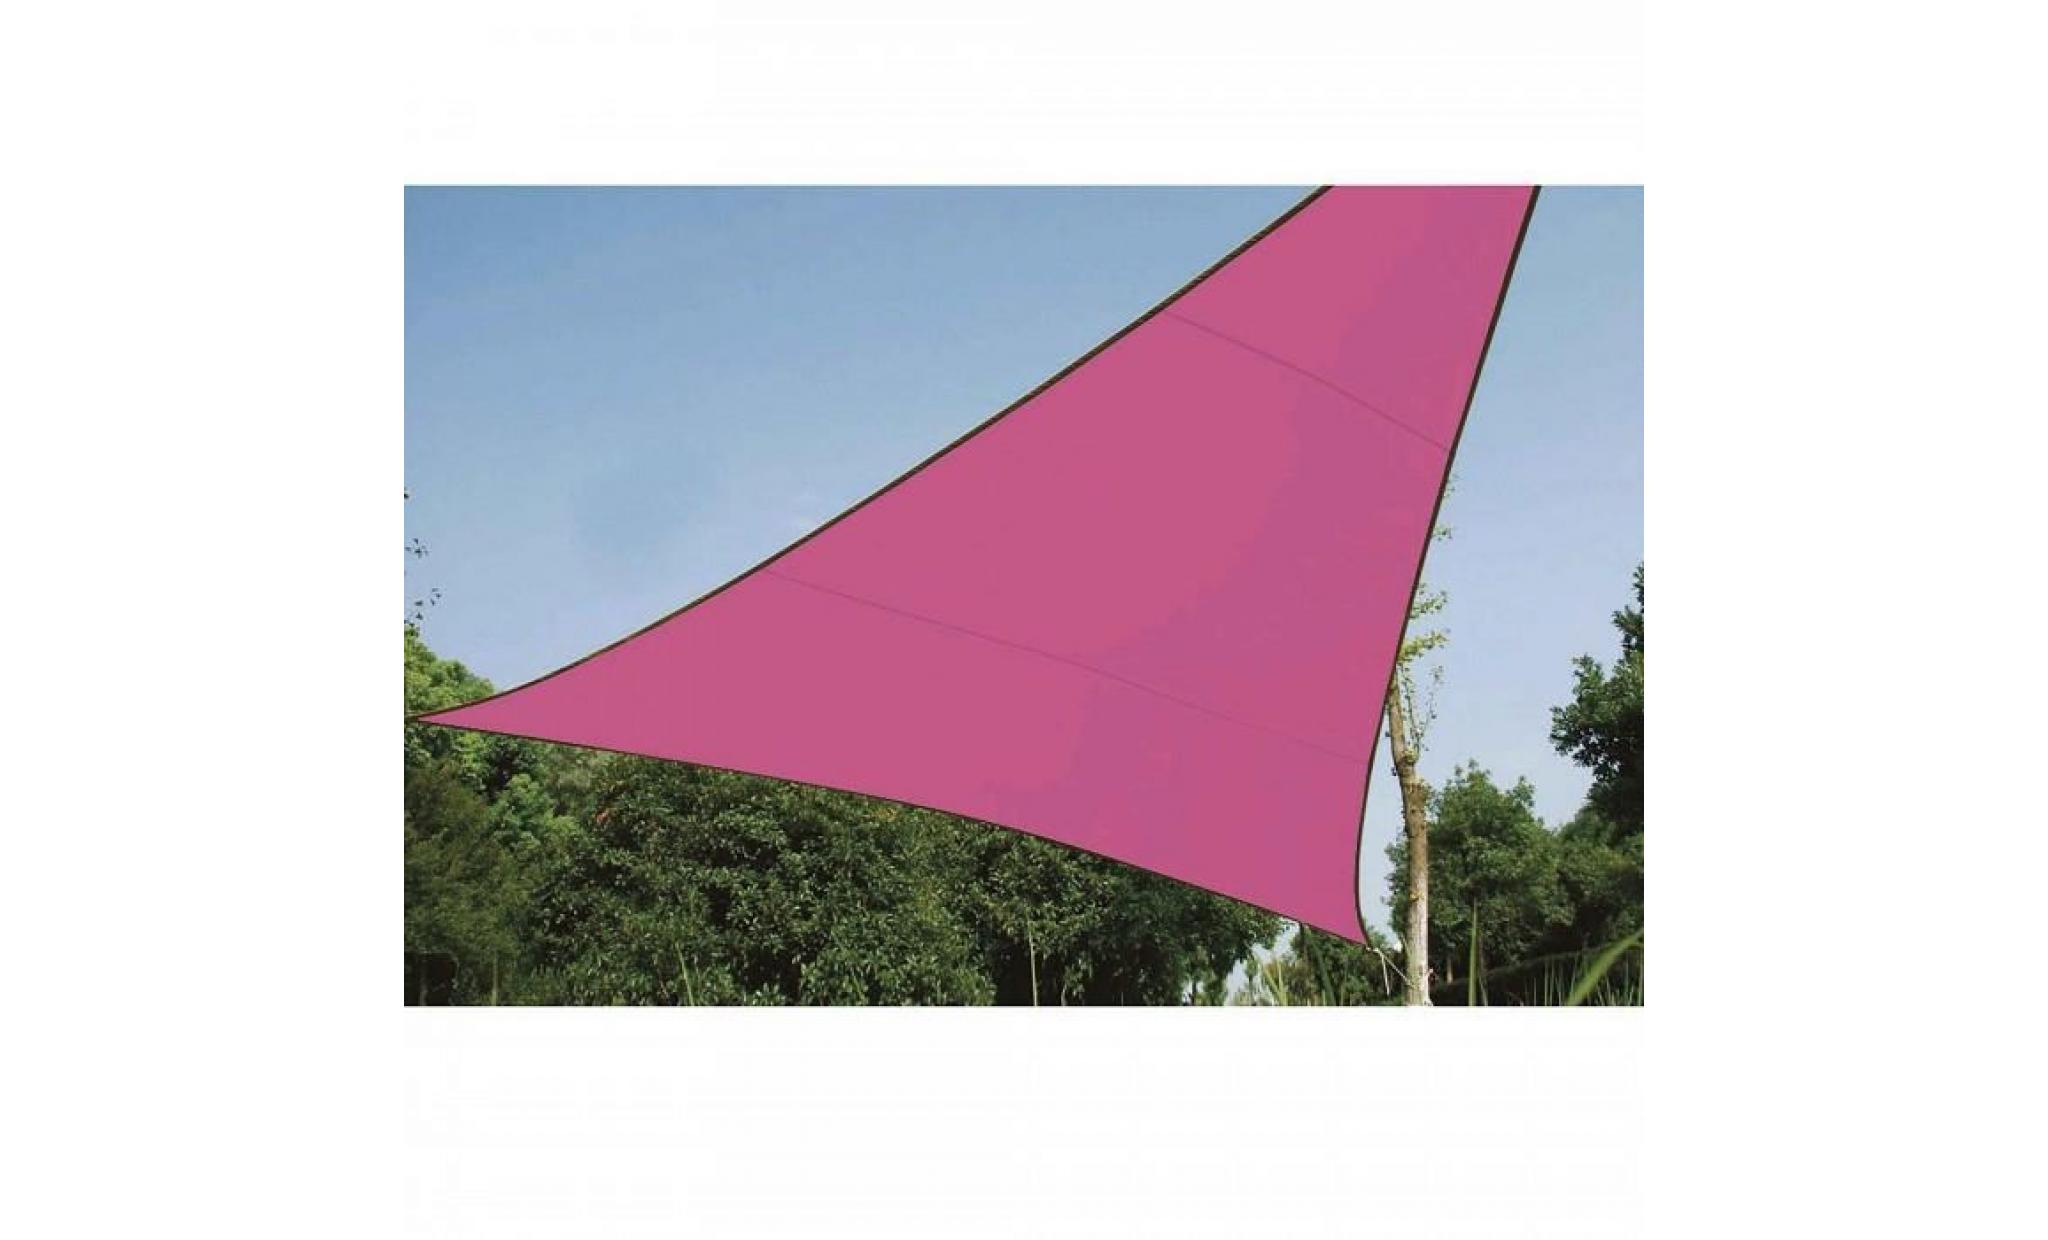 voile d'ombrage triangle 5m, ideale pour votre jardin et vos terrasses. tres belle toile couleur rose en tissu aere hyd